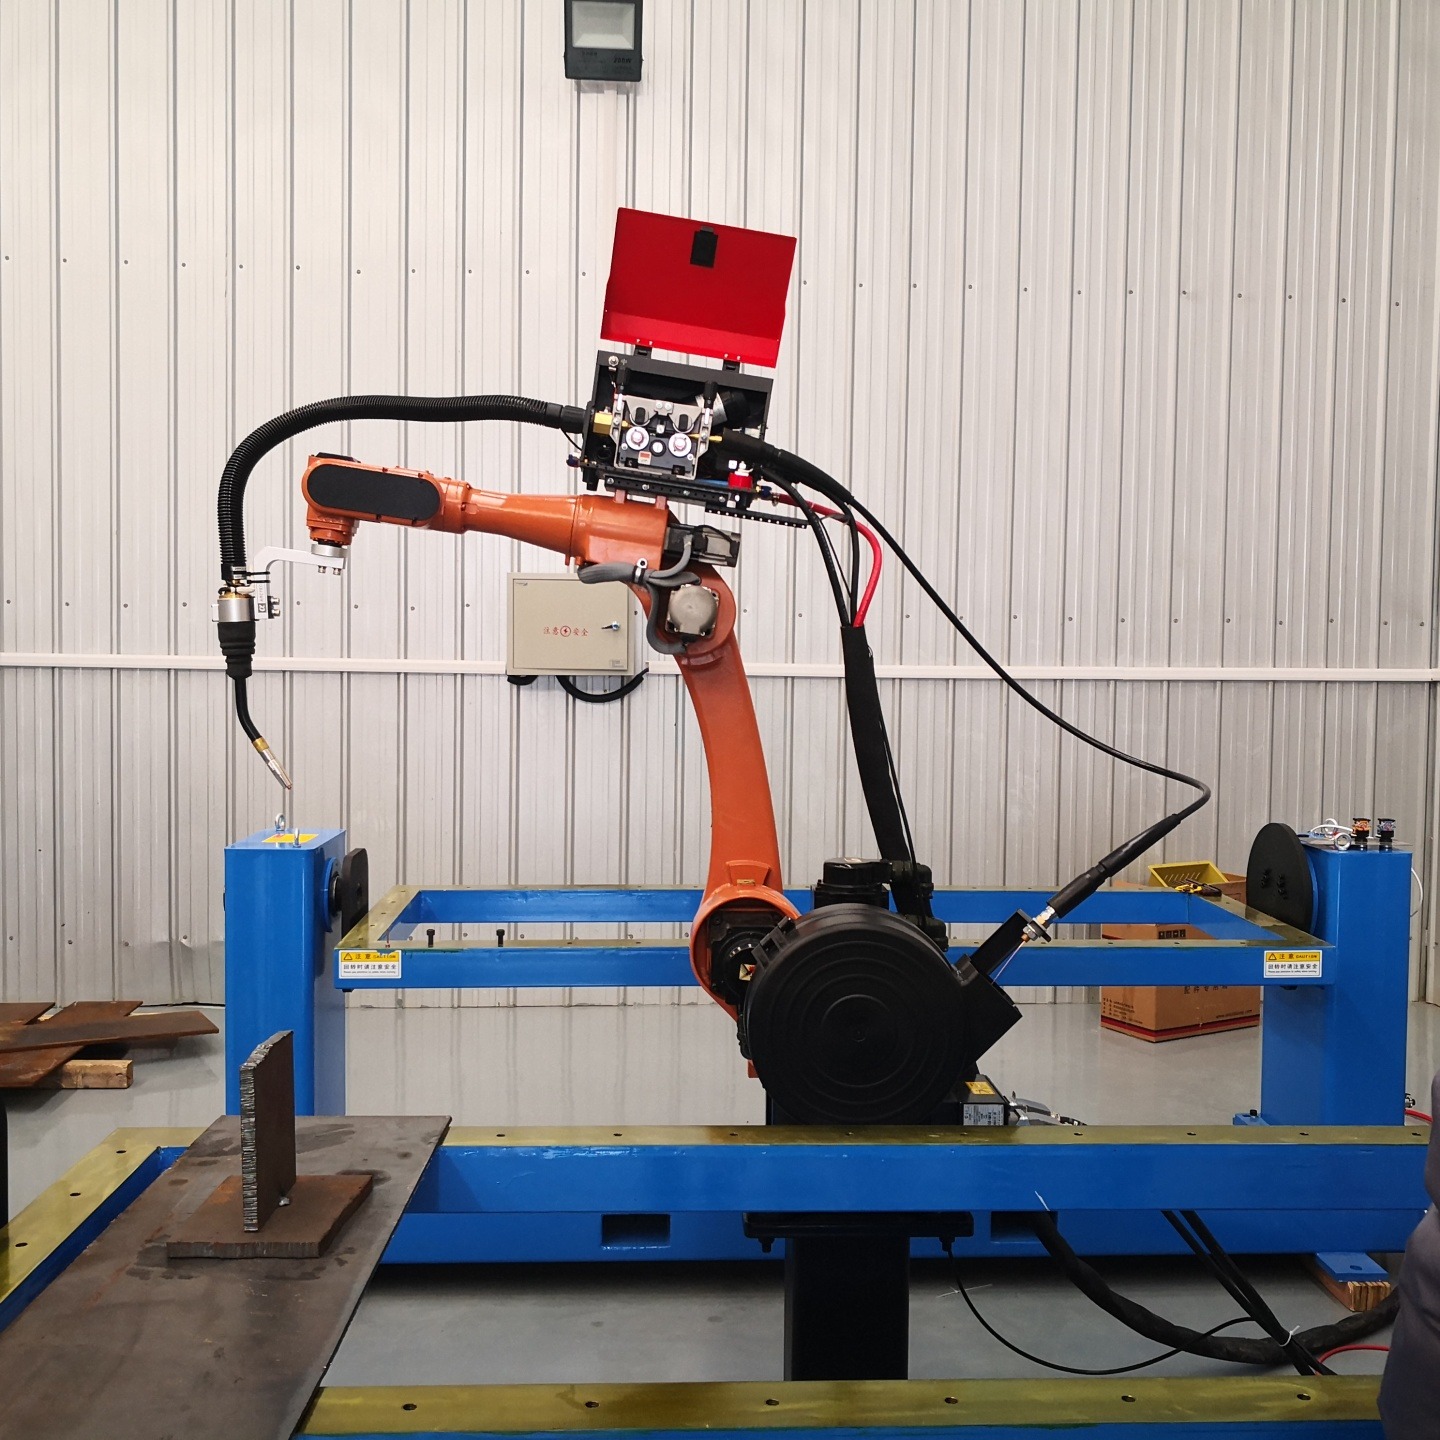 全自动焊接机械臂 工业焊接机械手臂 智能焊接机械臂 机器人焊接机 汽车制造焊接机械臂 赛邦智能